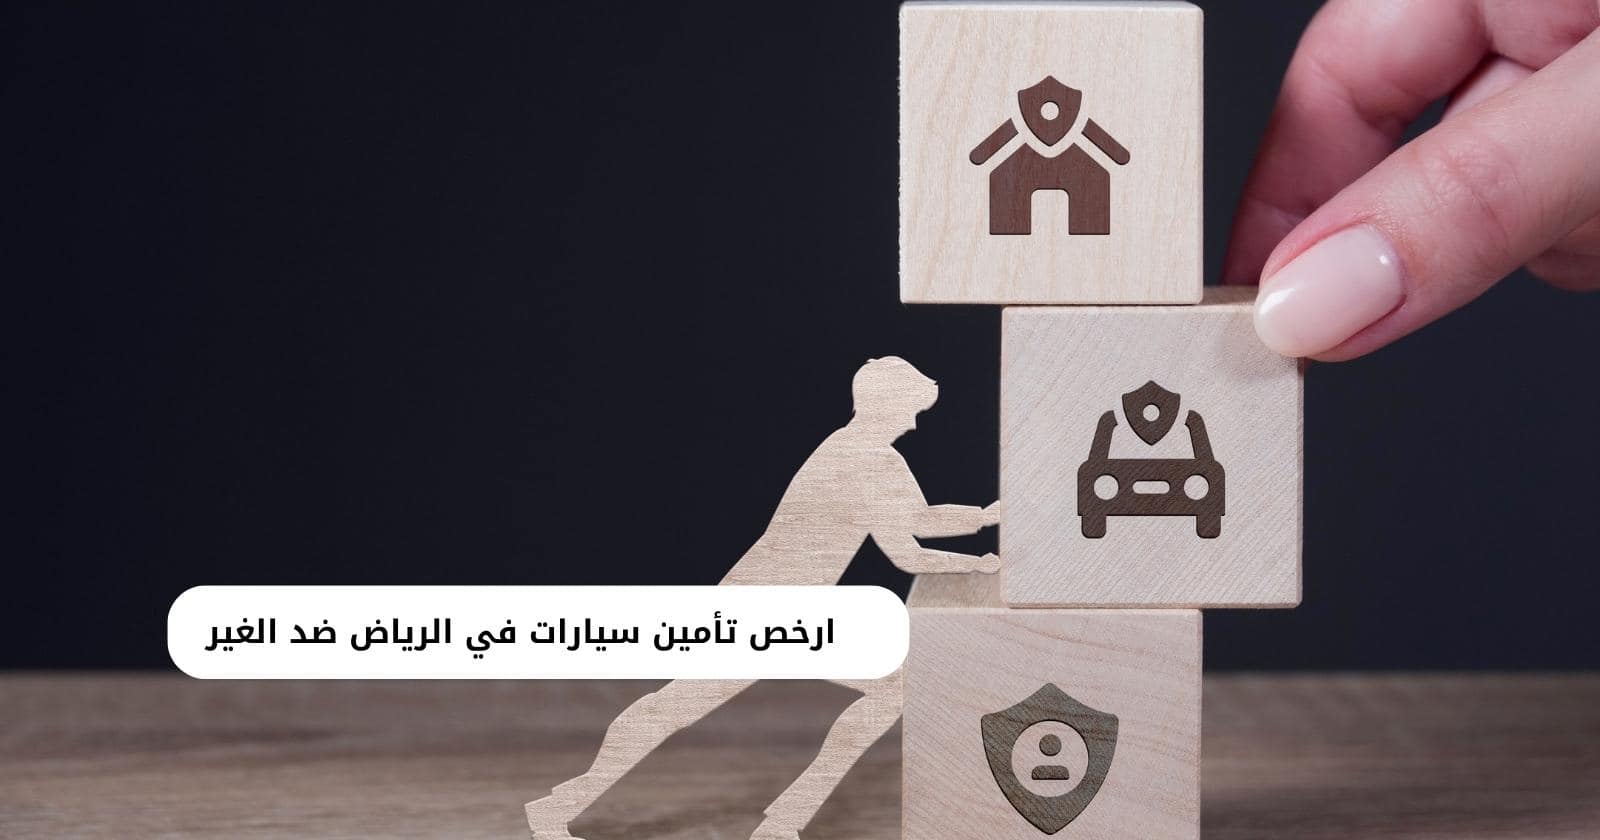 ارخص تأمين سيارات في الرياض ضد الغير